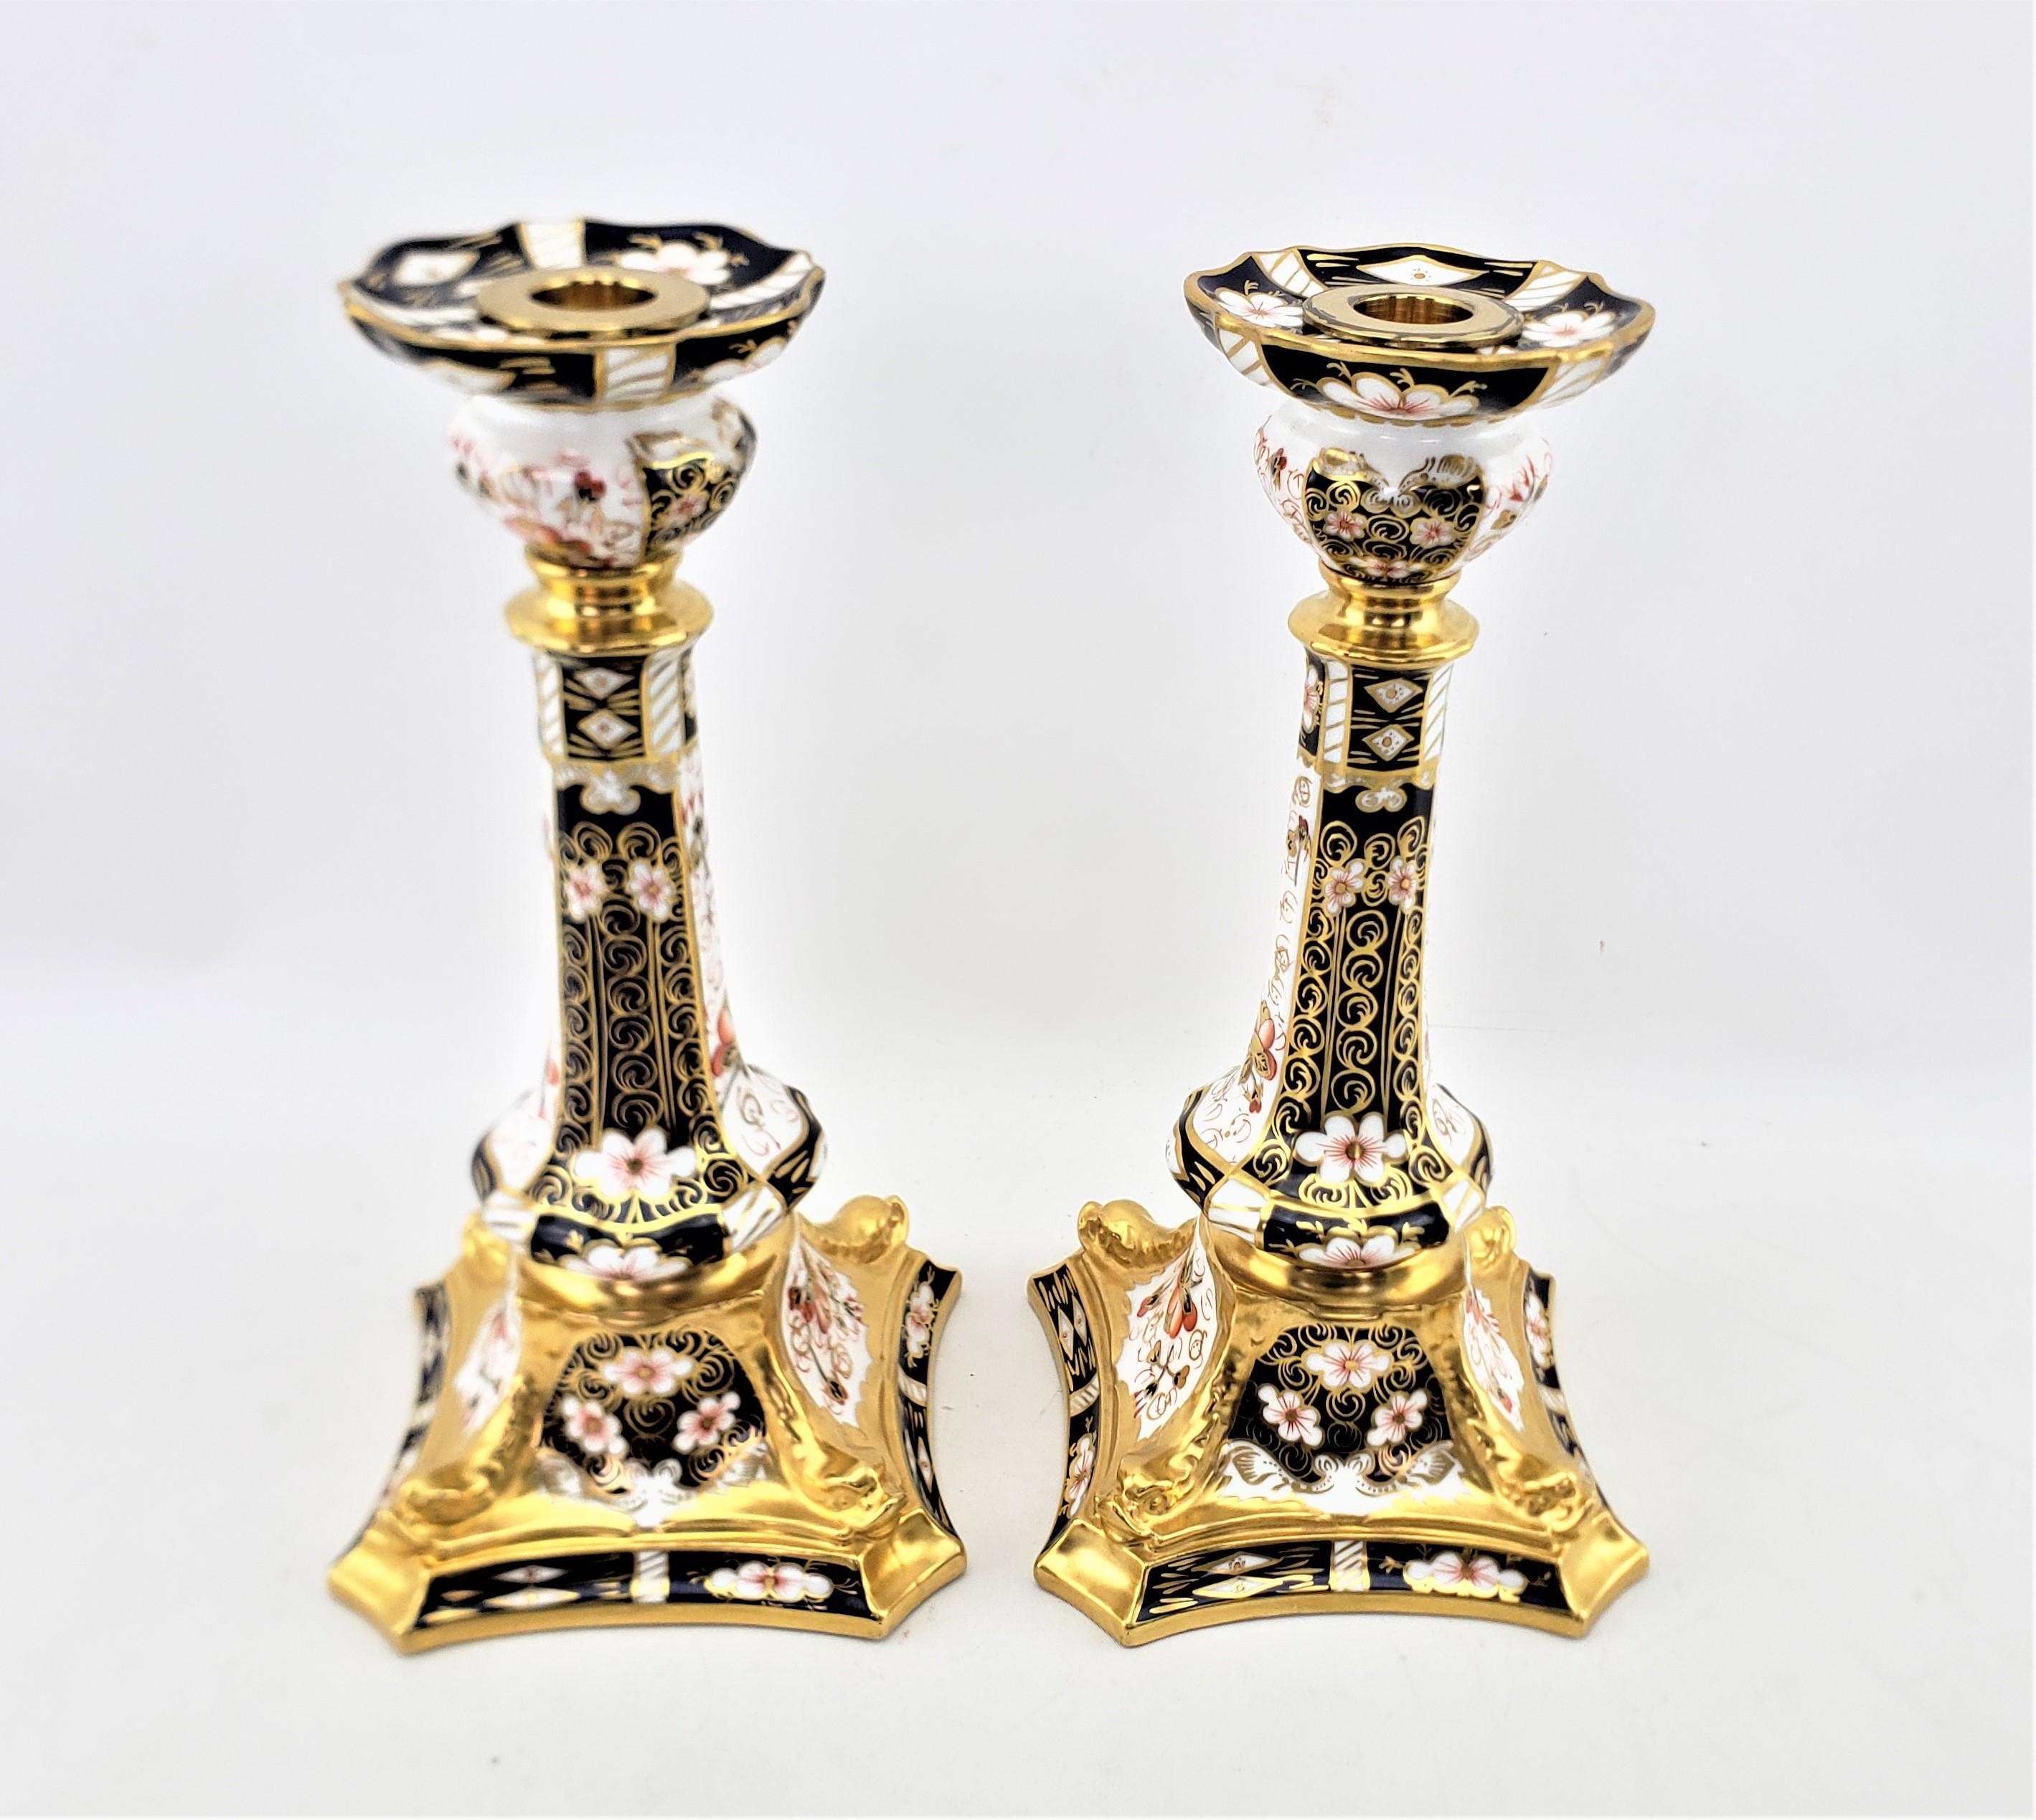 Cette paire de grands chandeliers a été fabriquée vers 1920 par la très renommée manufacture anglaise Royal Crown Derby dans son motif traditionnel 2451 Imari. Les chandeliers sont en porcelaine de Chine à fond blanc, peints à la main en rouge et en